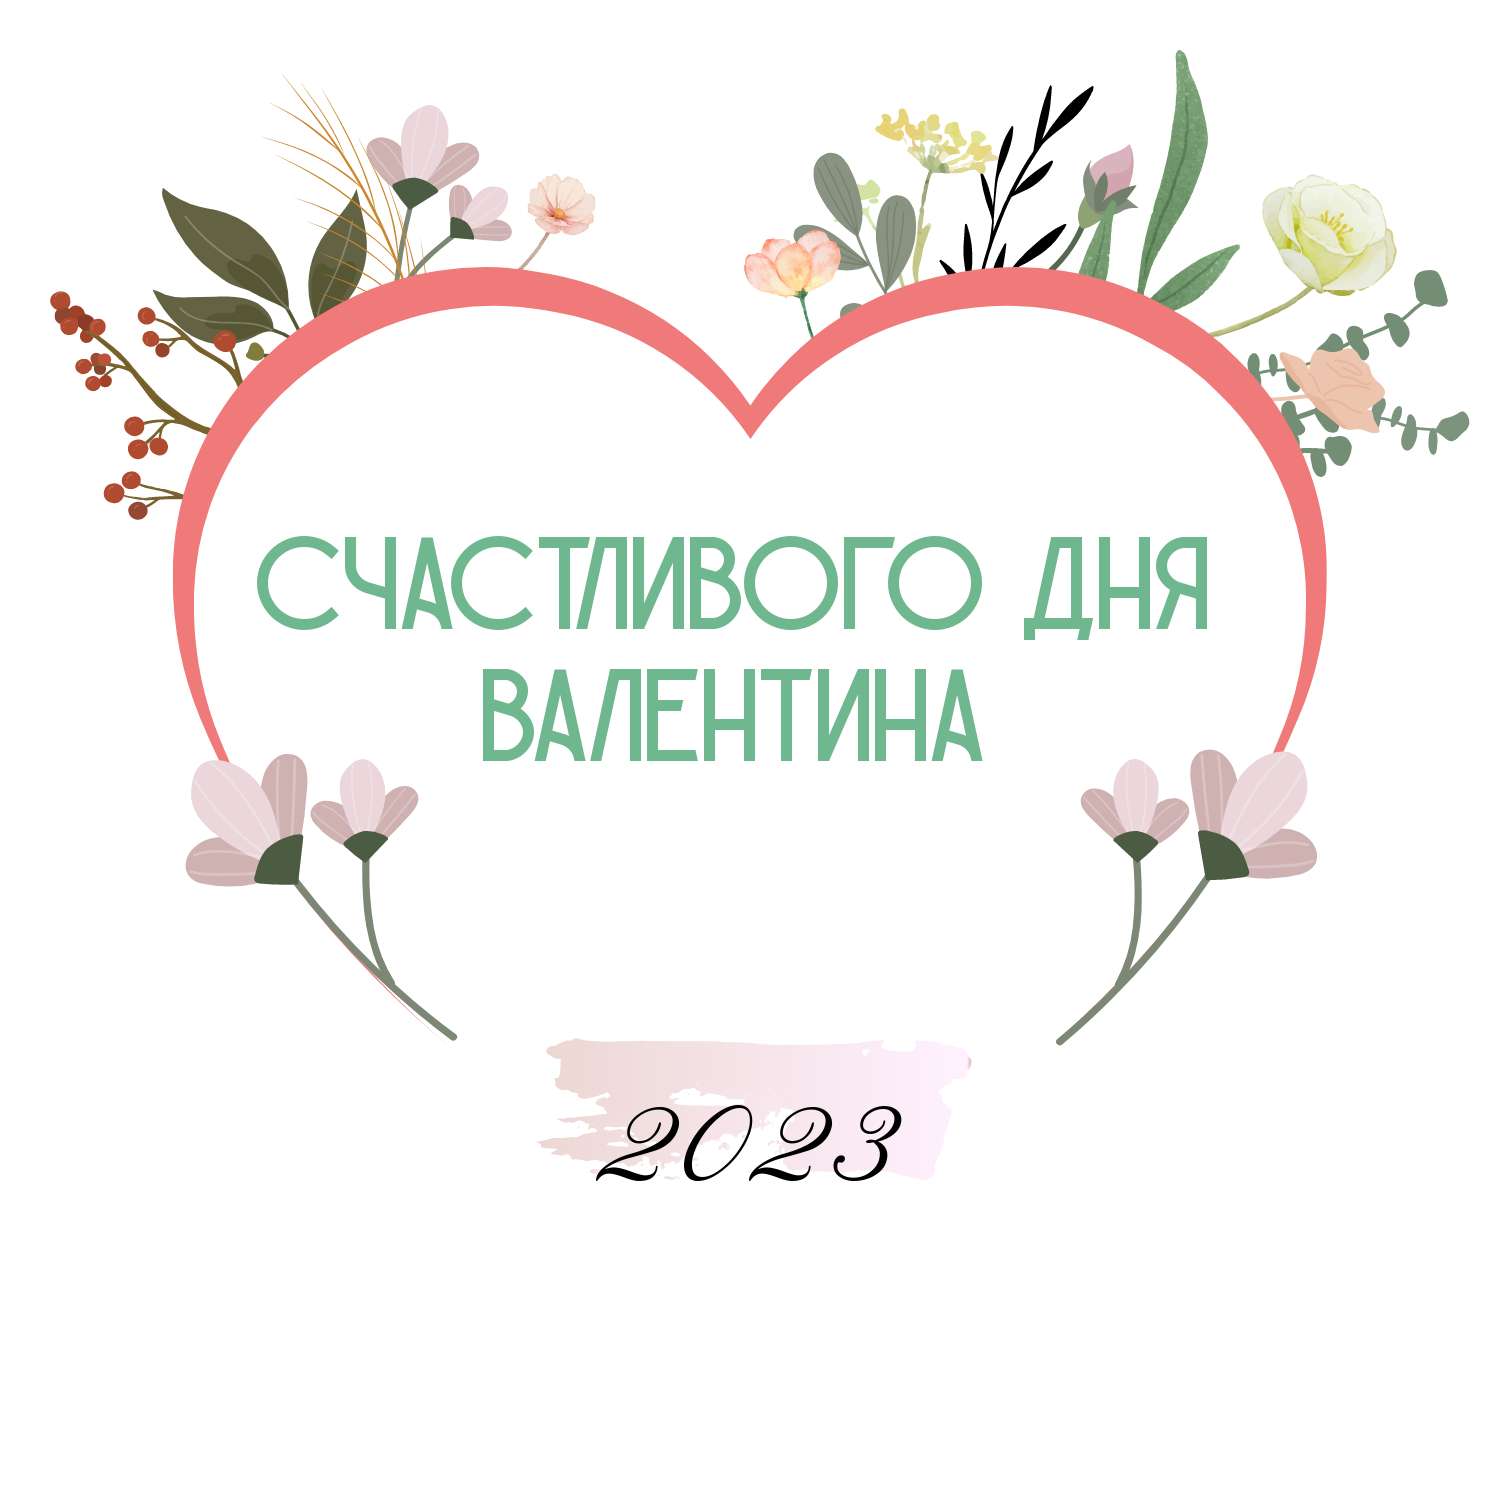 Нарисованная открытка в день святого Валентина 14 февраля с сердечком и цветами